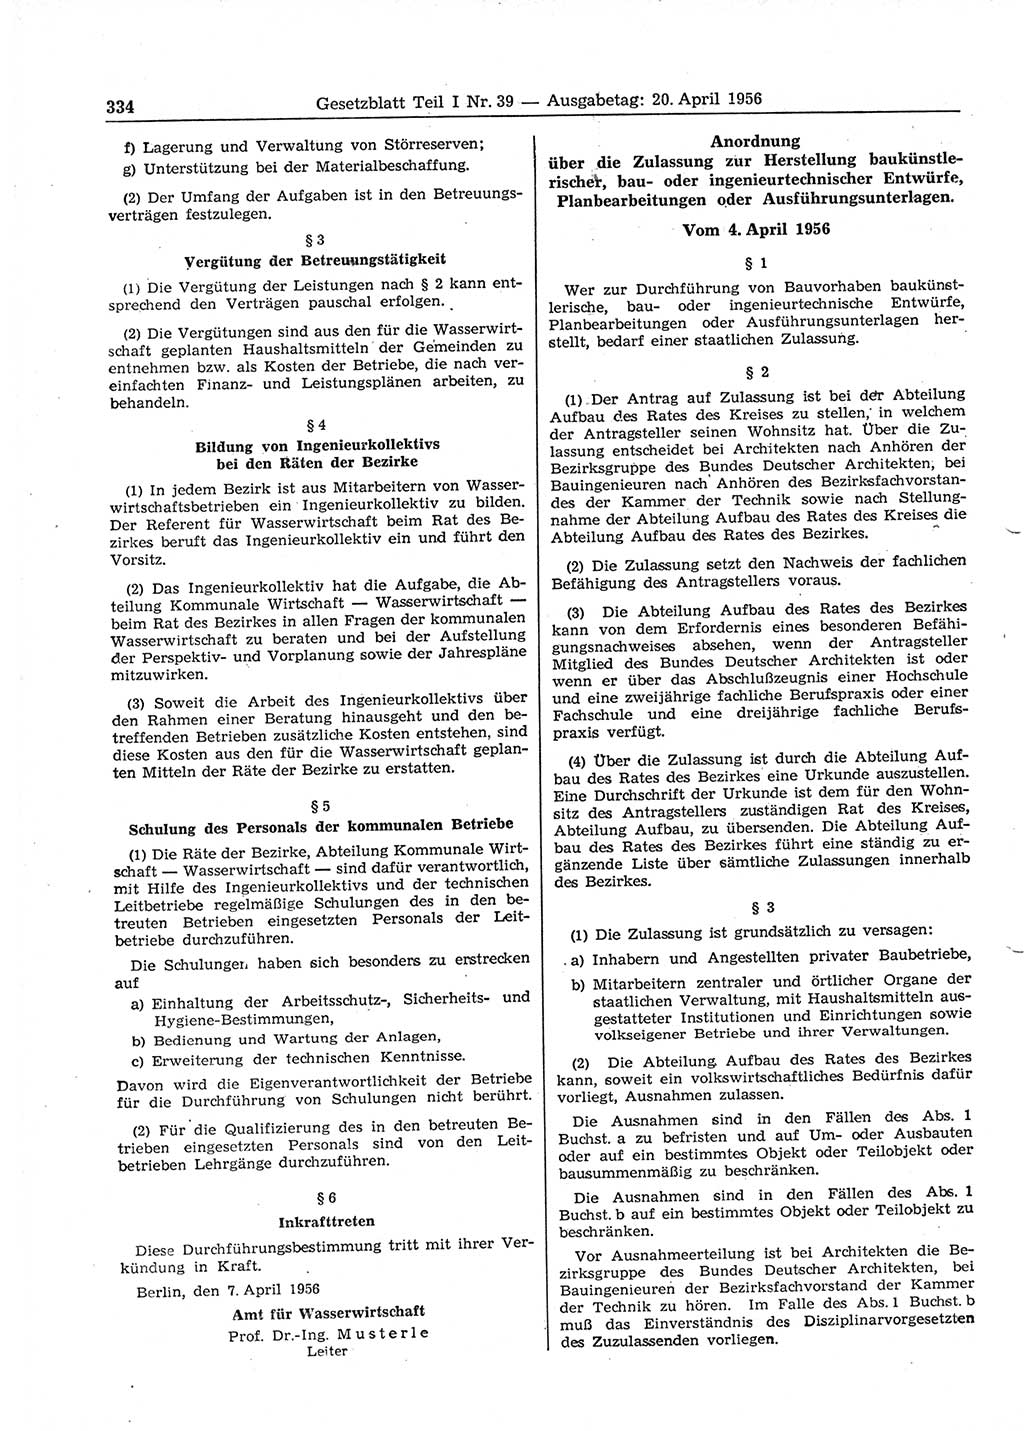 Gesetzblatt (GBl.) der Deutschen Demokratischen Republik (DDR) Teil Ⅰ 1956, Seite 334 (GBl. DDR Ⅰ 1956, S. 334)